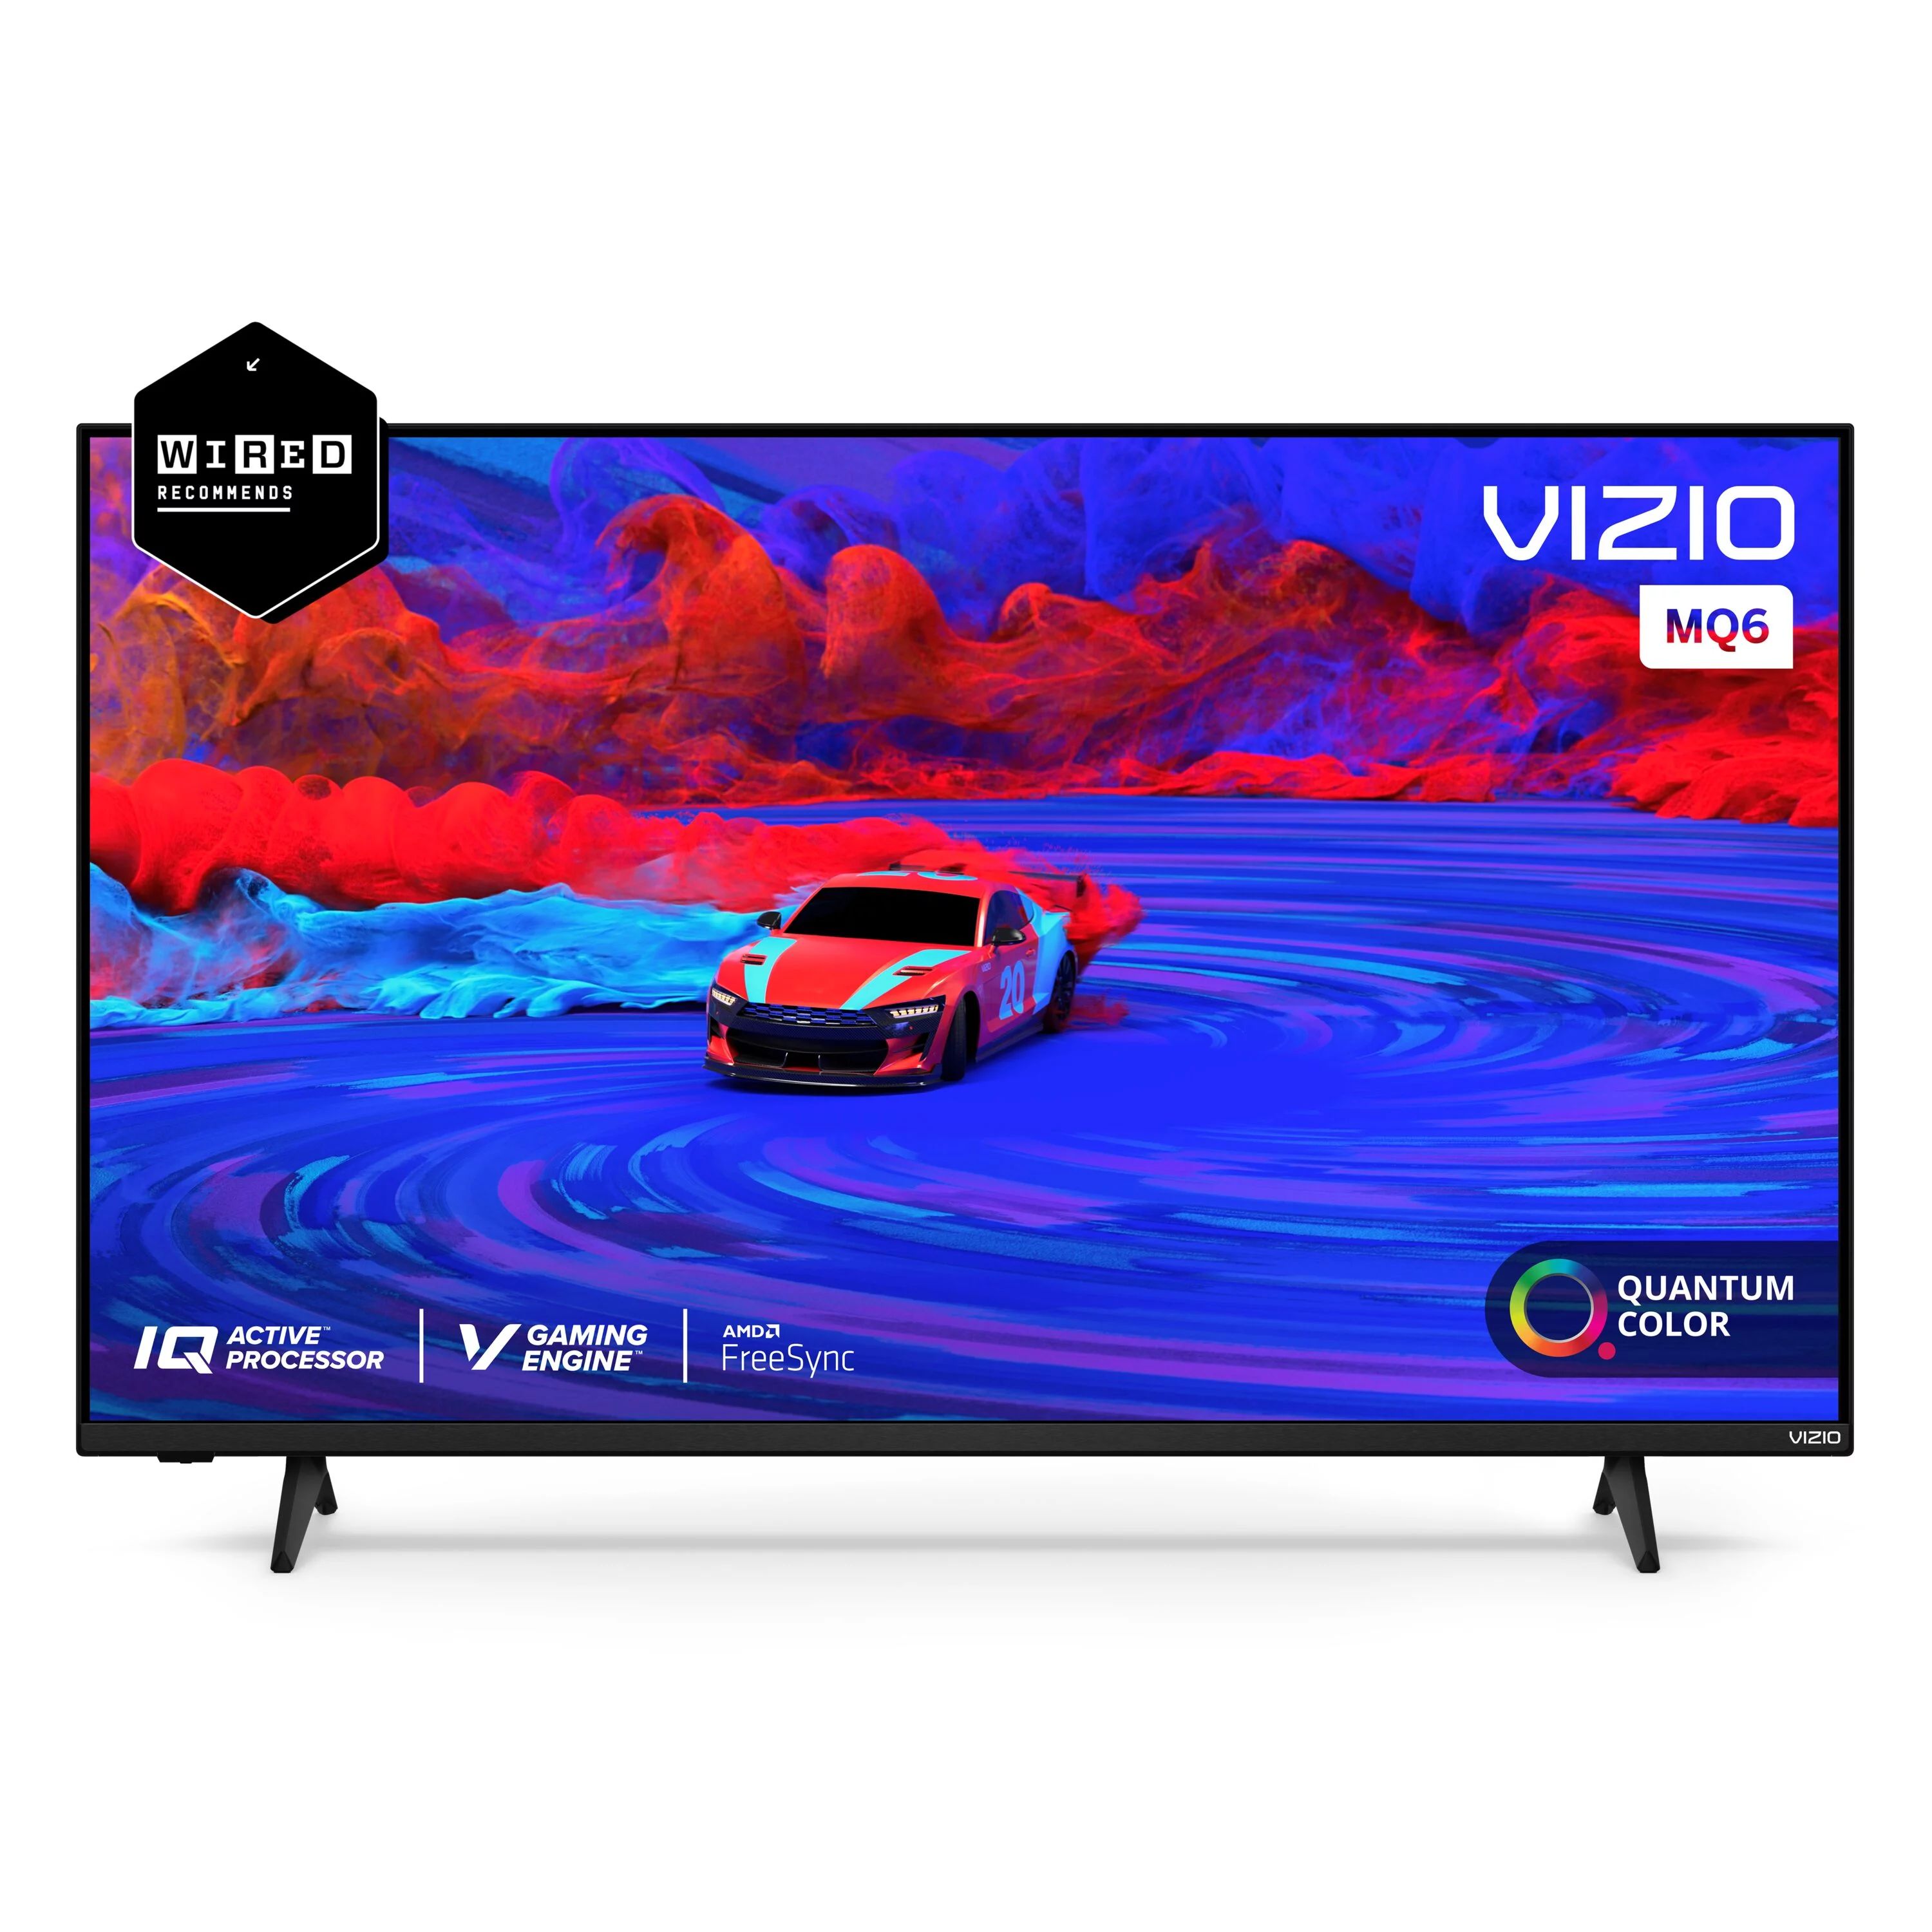 VIZIO 50" Class M6 Series 4K QLED HDR Smart TV (Newest Model) M50Q6-J01 | Walmart (US)